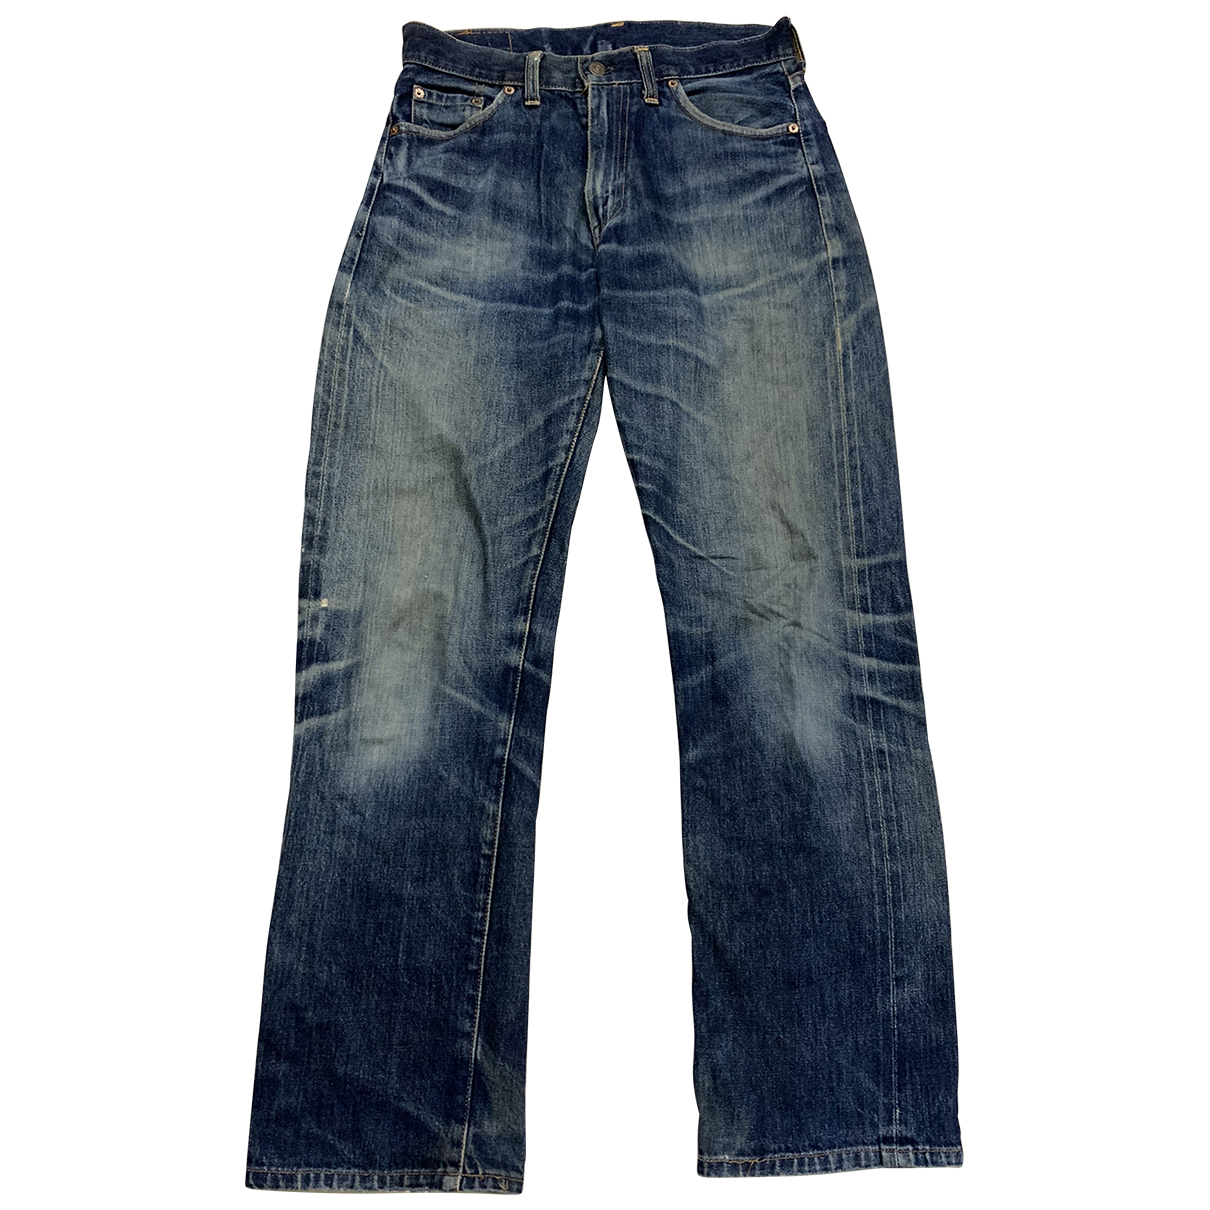 Levi's Vintage Clothing Jeans